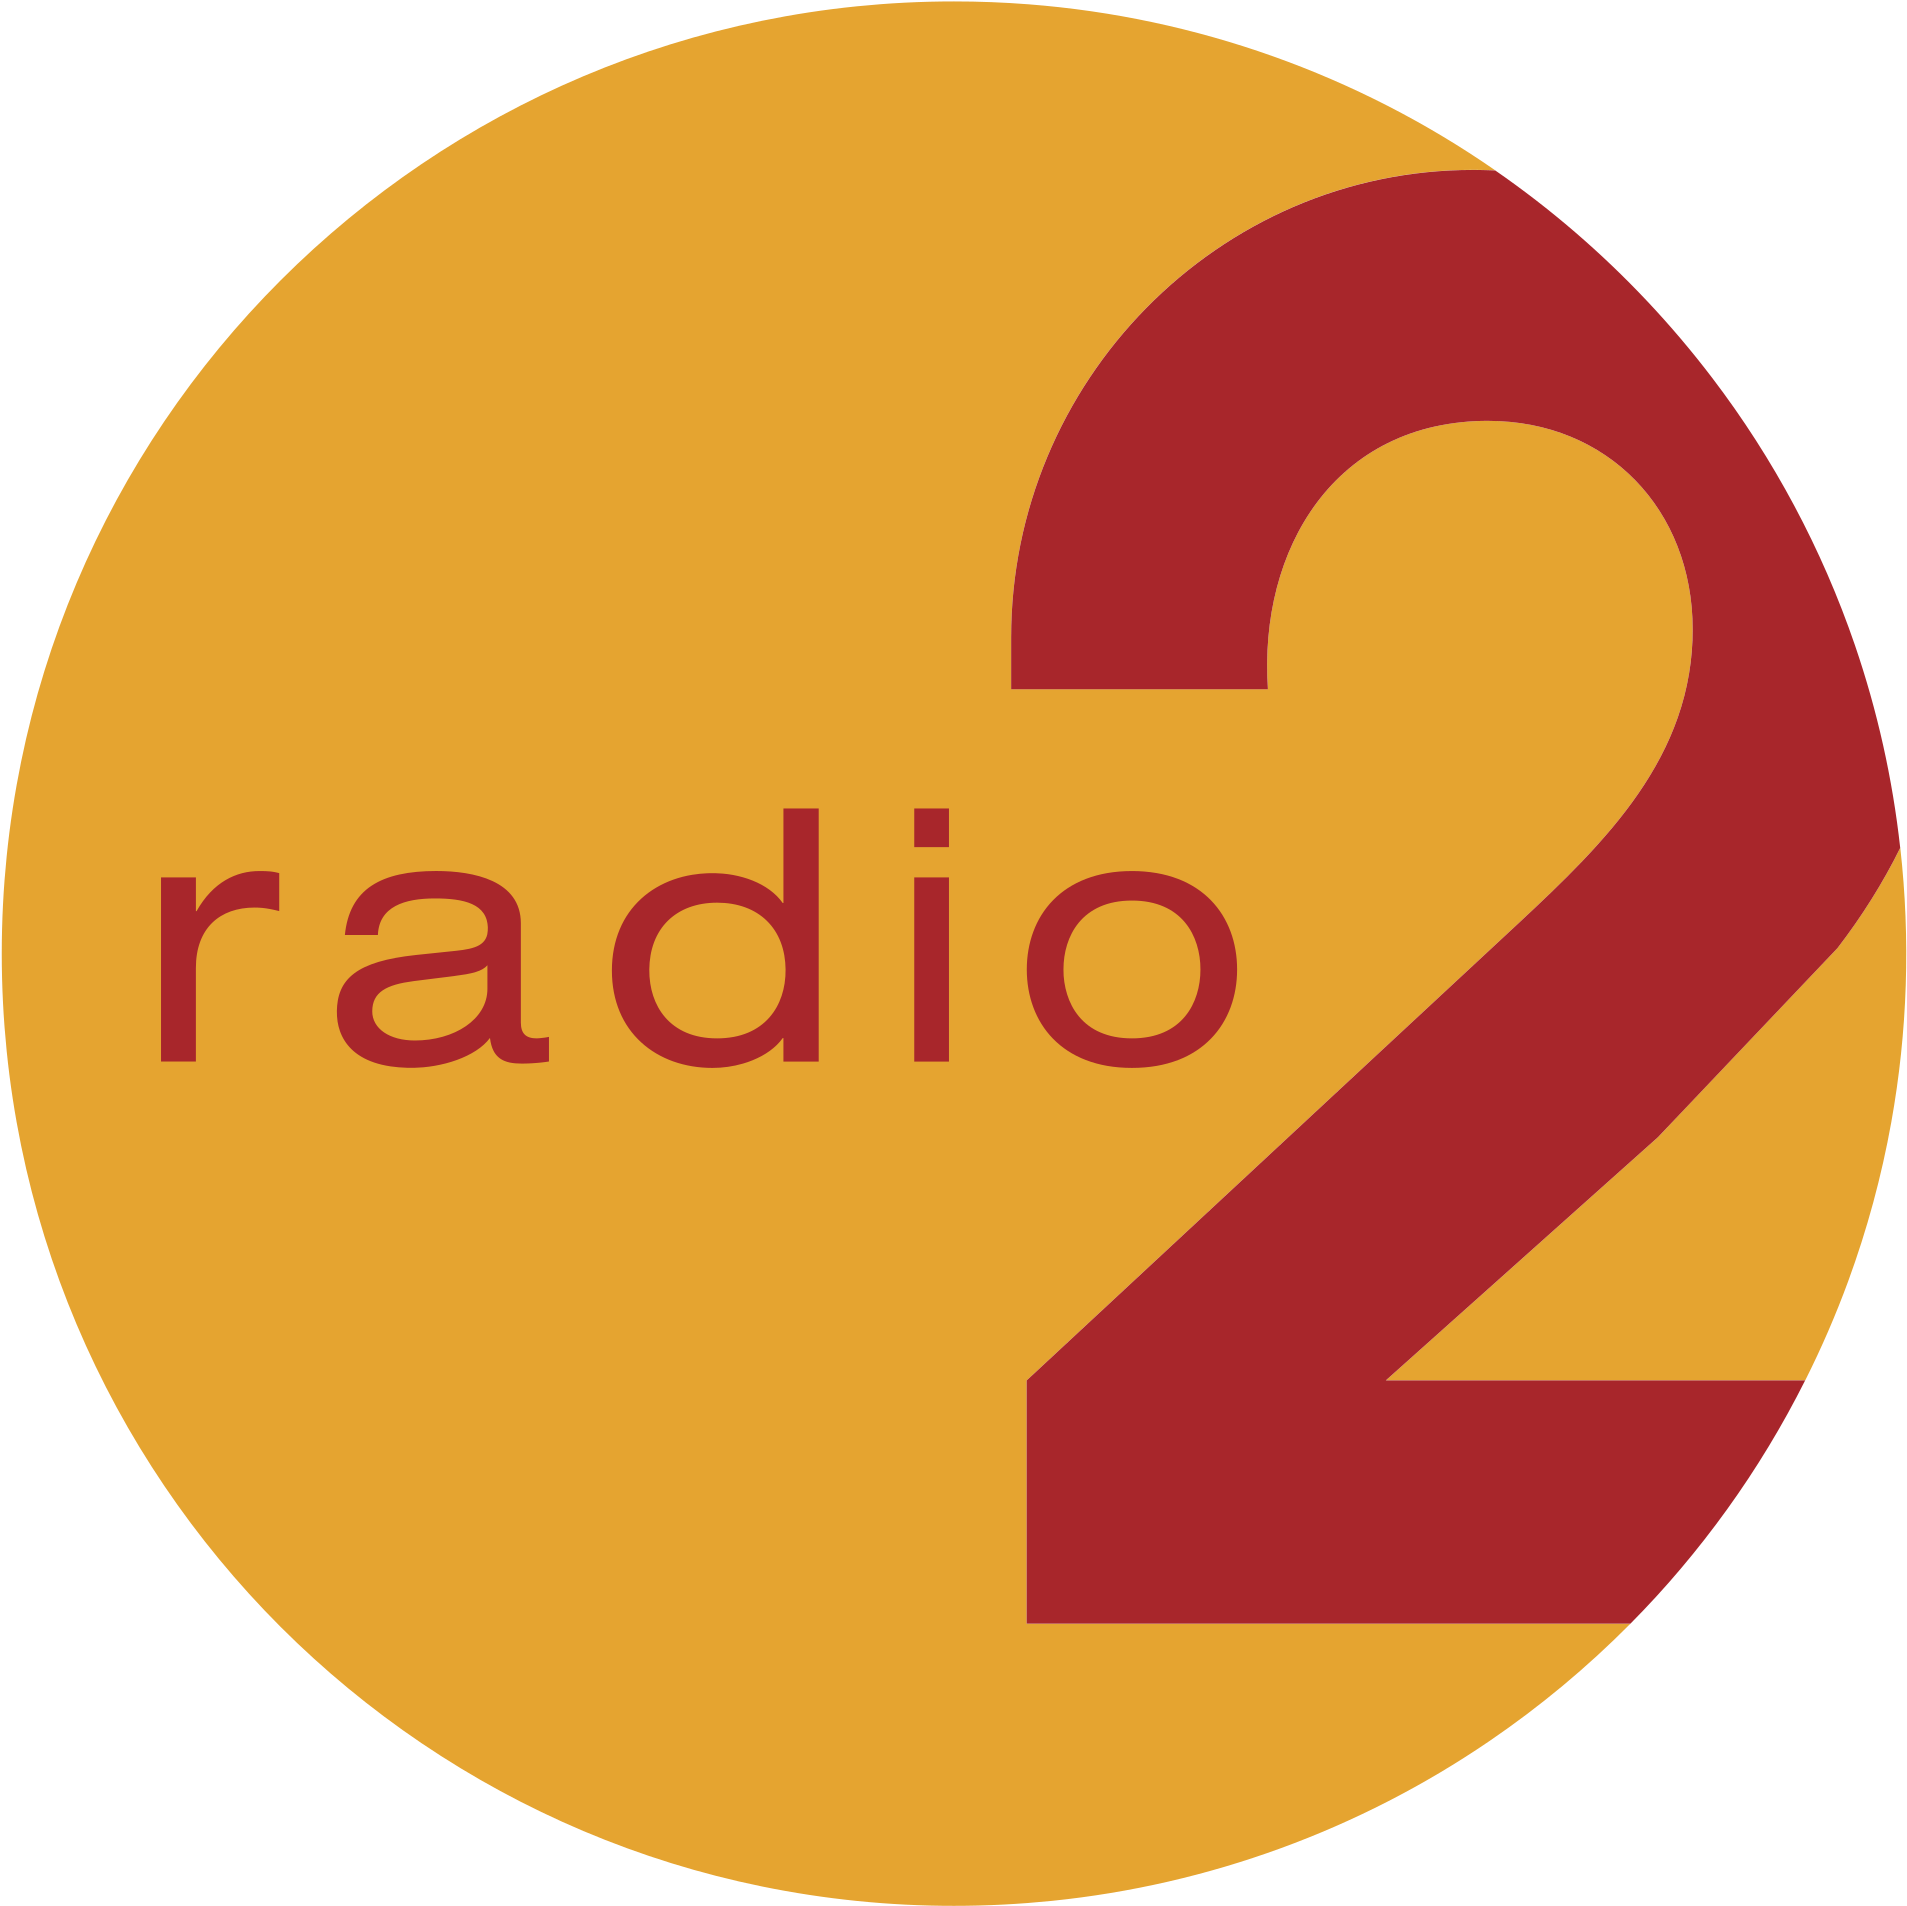 102 2 радио. Radio 2. Радио logo 1. Радио 2.1. Три два радио логотип.